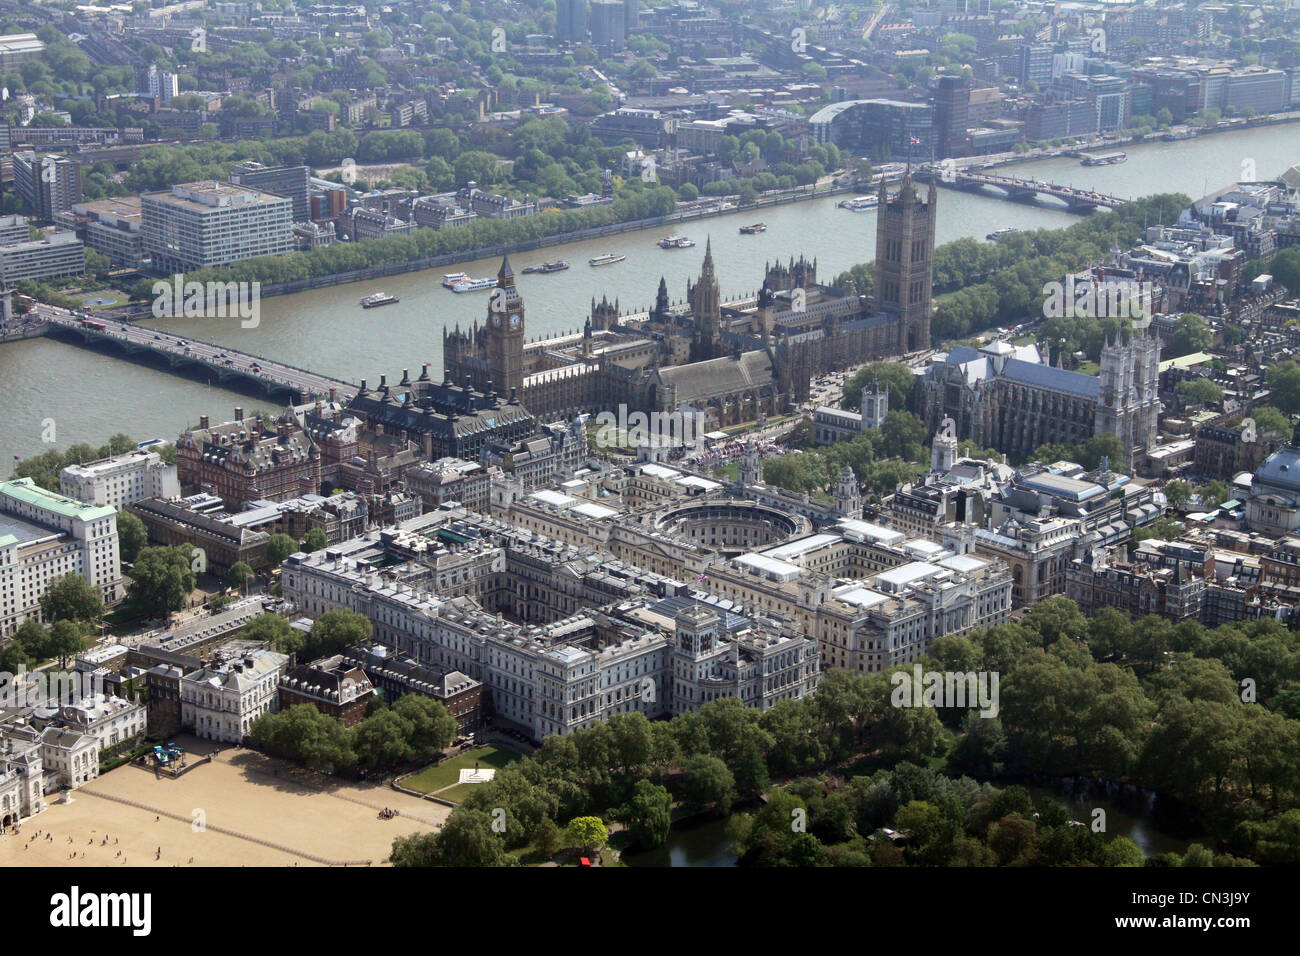 Vista aérea de Downing Street y Foreign & Commonwealth Office 10 mirando hacia las Casas del Parlamento y el río Támesis en el fondo, Londres Foto de stock